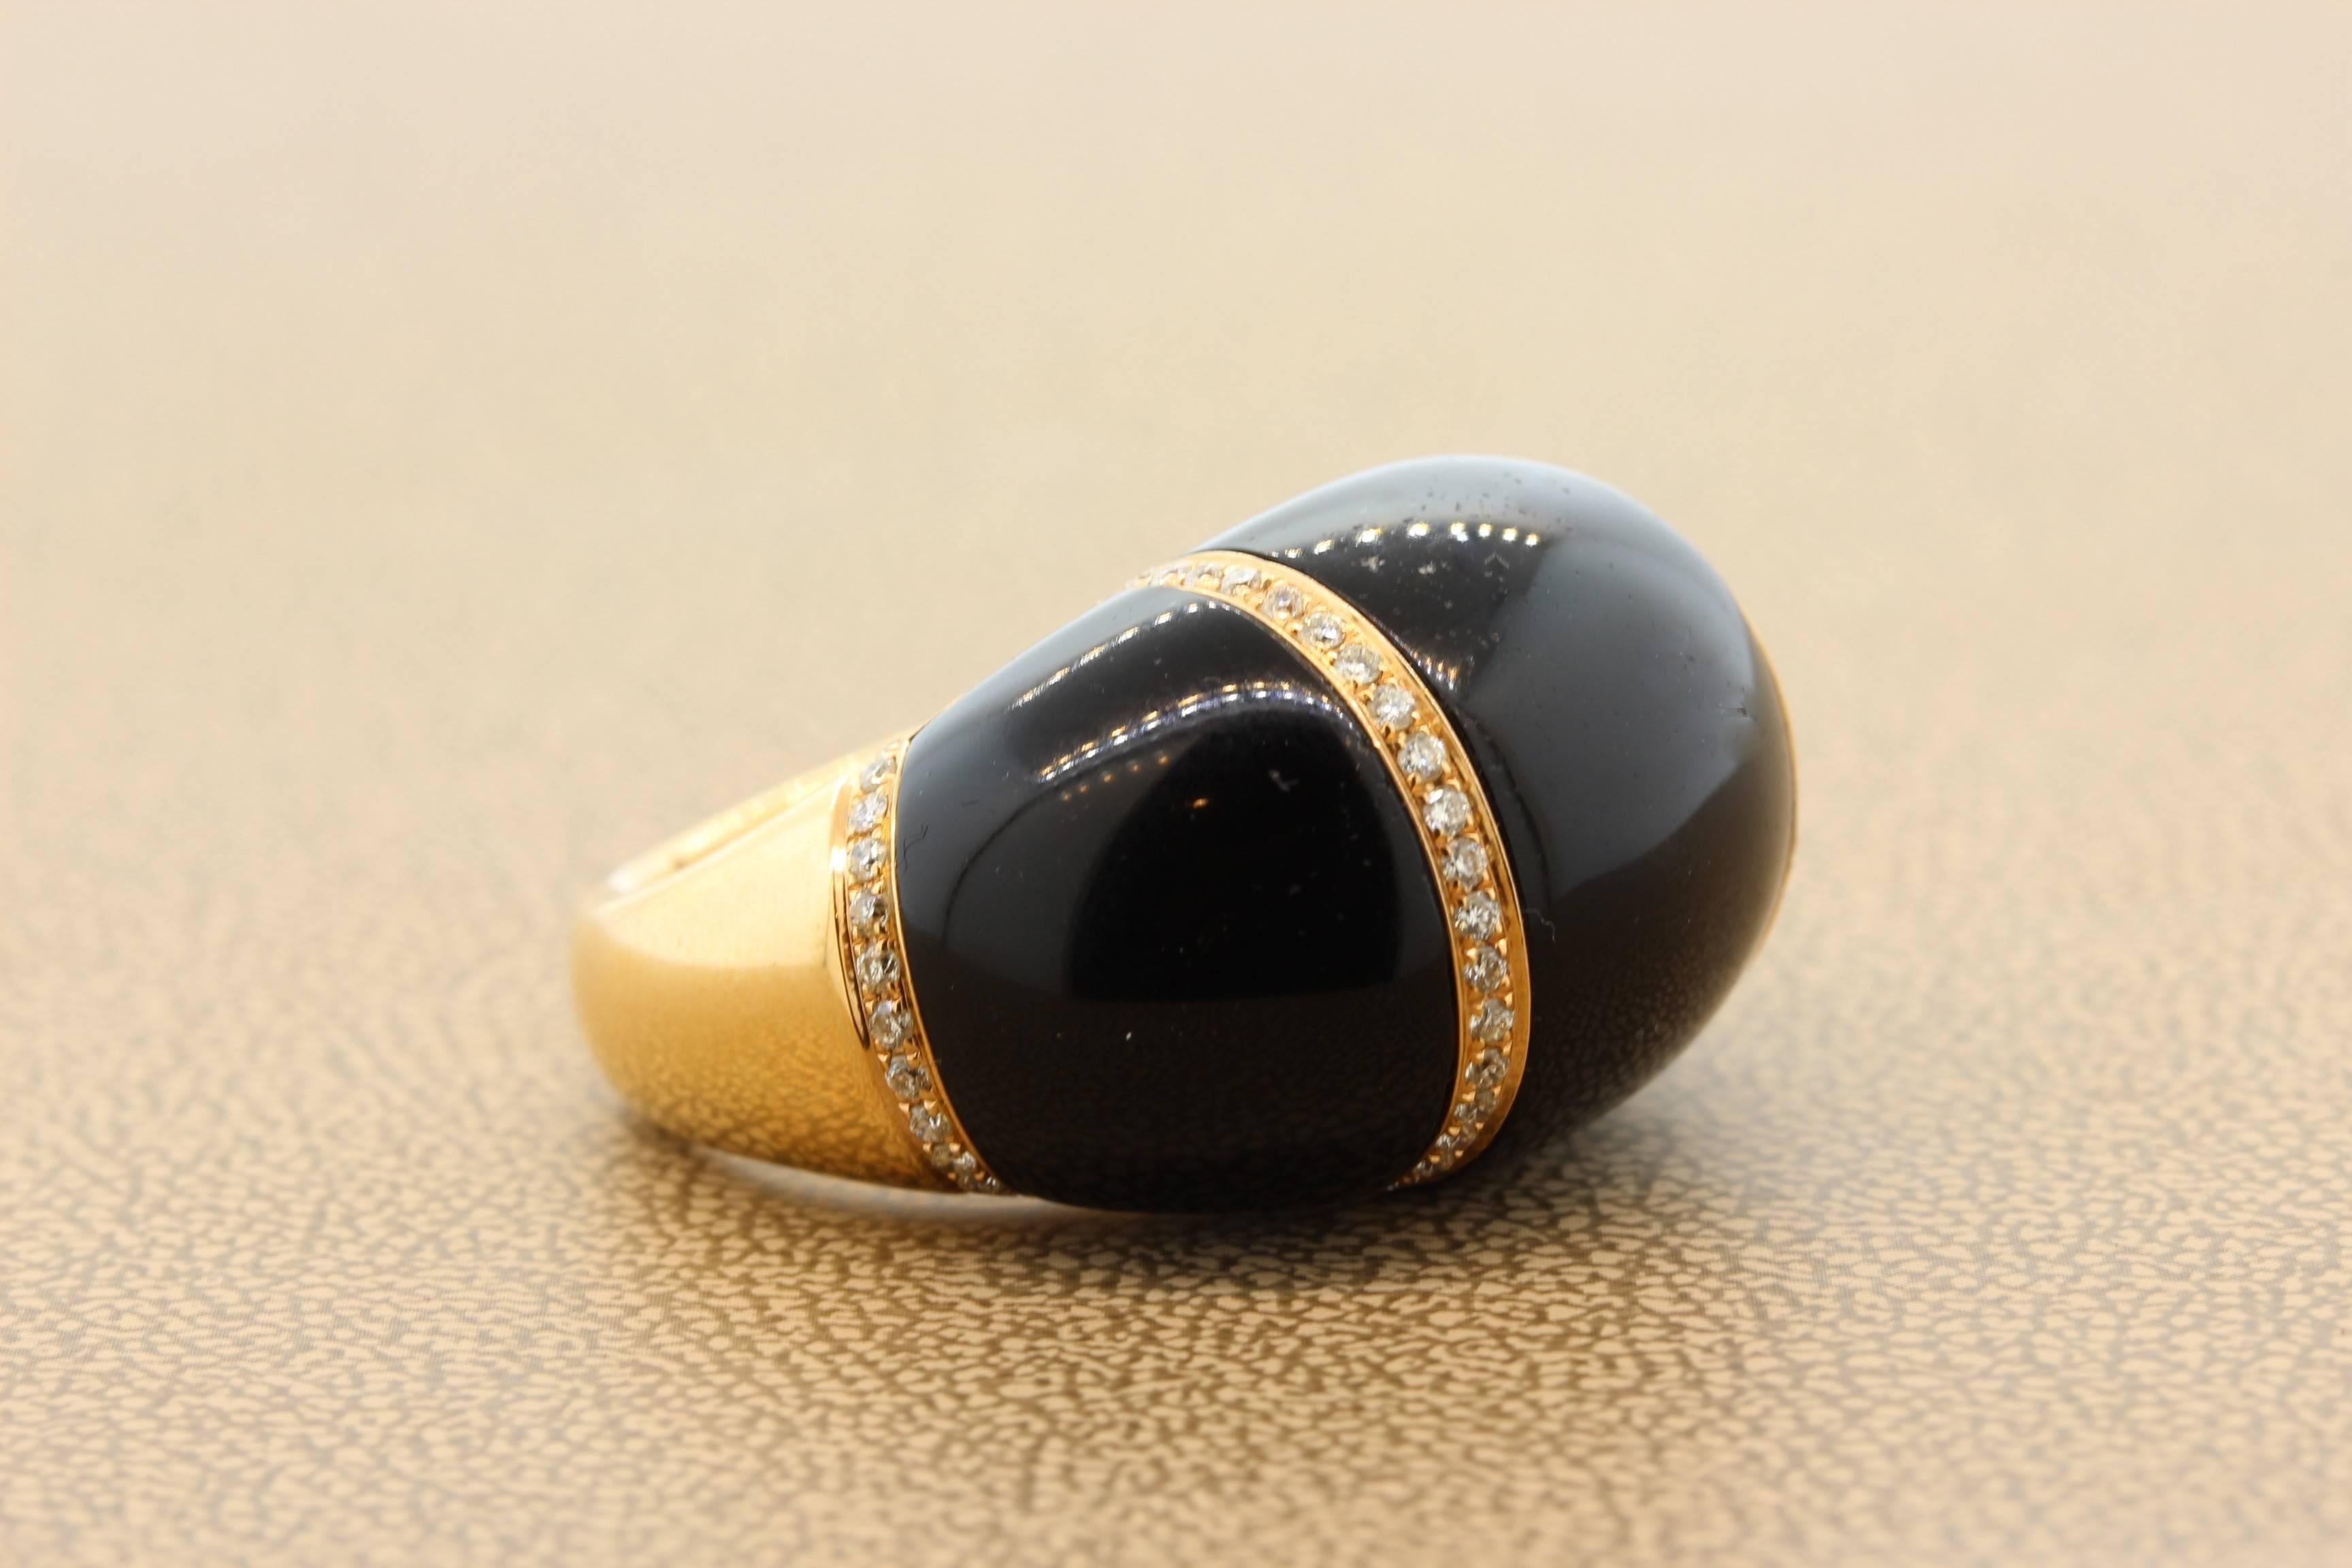 Voici une bague de cocktail unique comportant trois pièces d'onyx noir lustré. Les pièces sont agrémentées de 0,75 carats de diamants ronds sertis dans de l'or rose 18 carats. 
Taille 7
